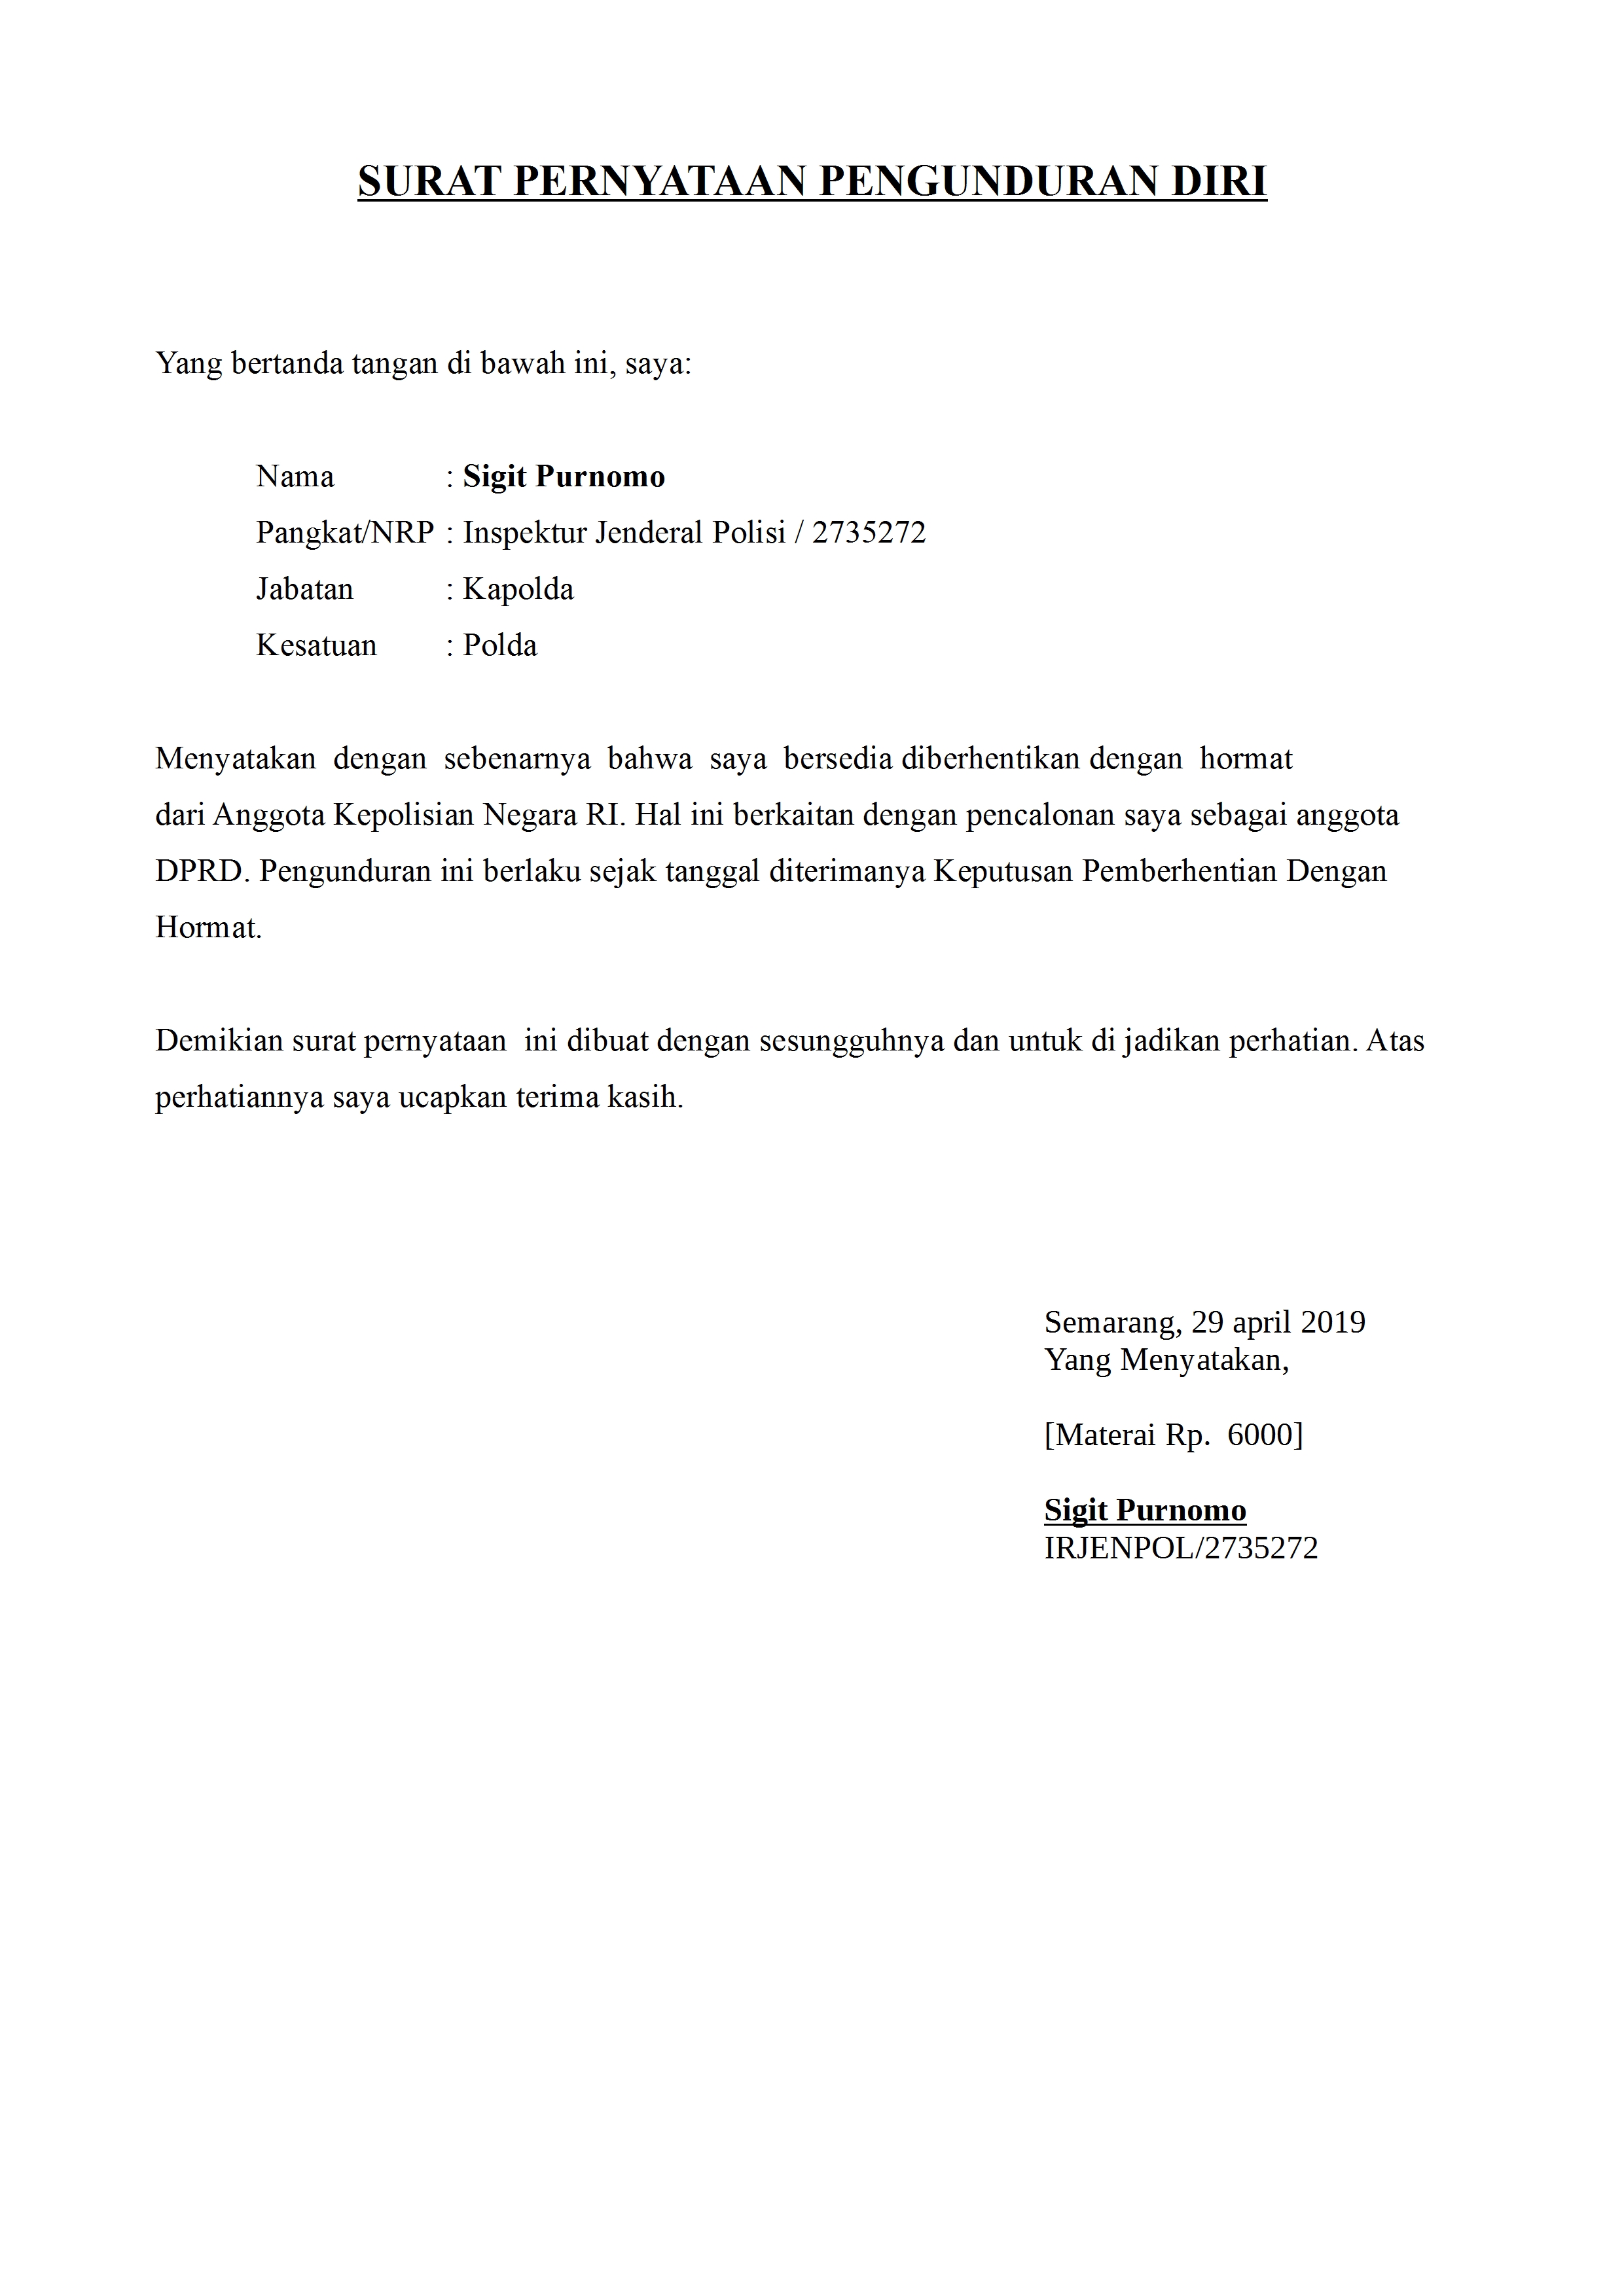 Contoh Surat Pengunduran Diri Anggota Polisi Dan TNI ...